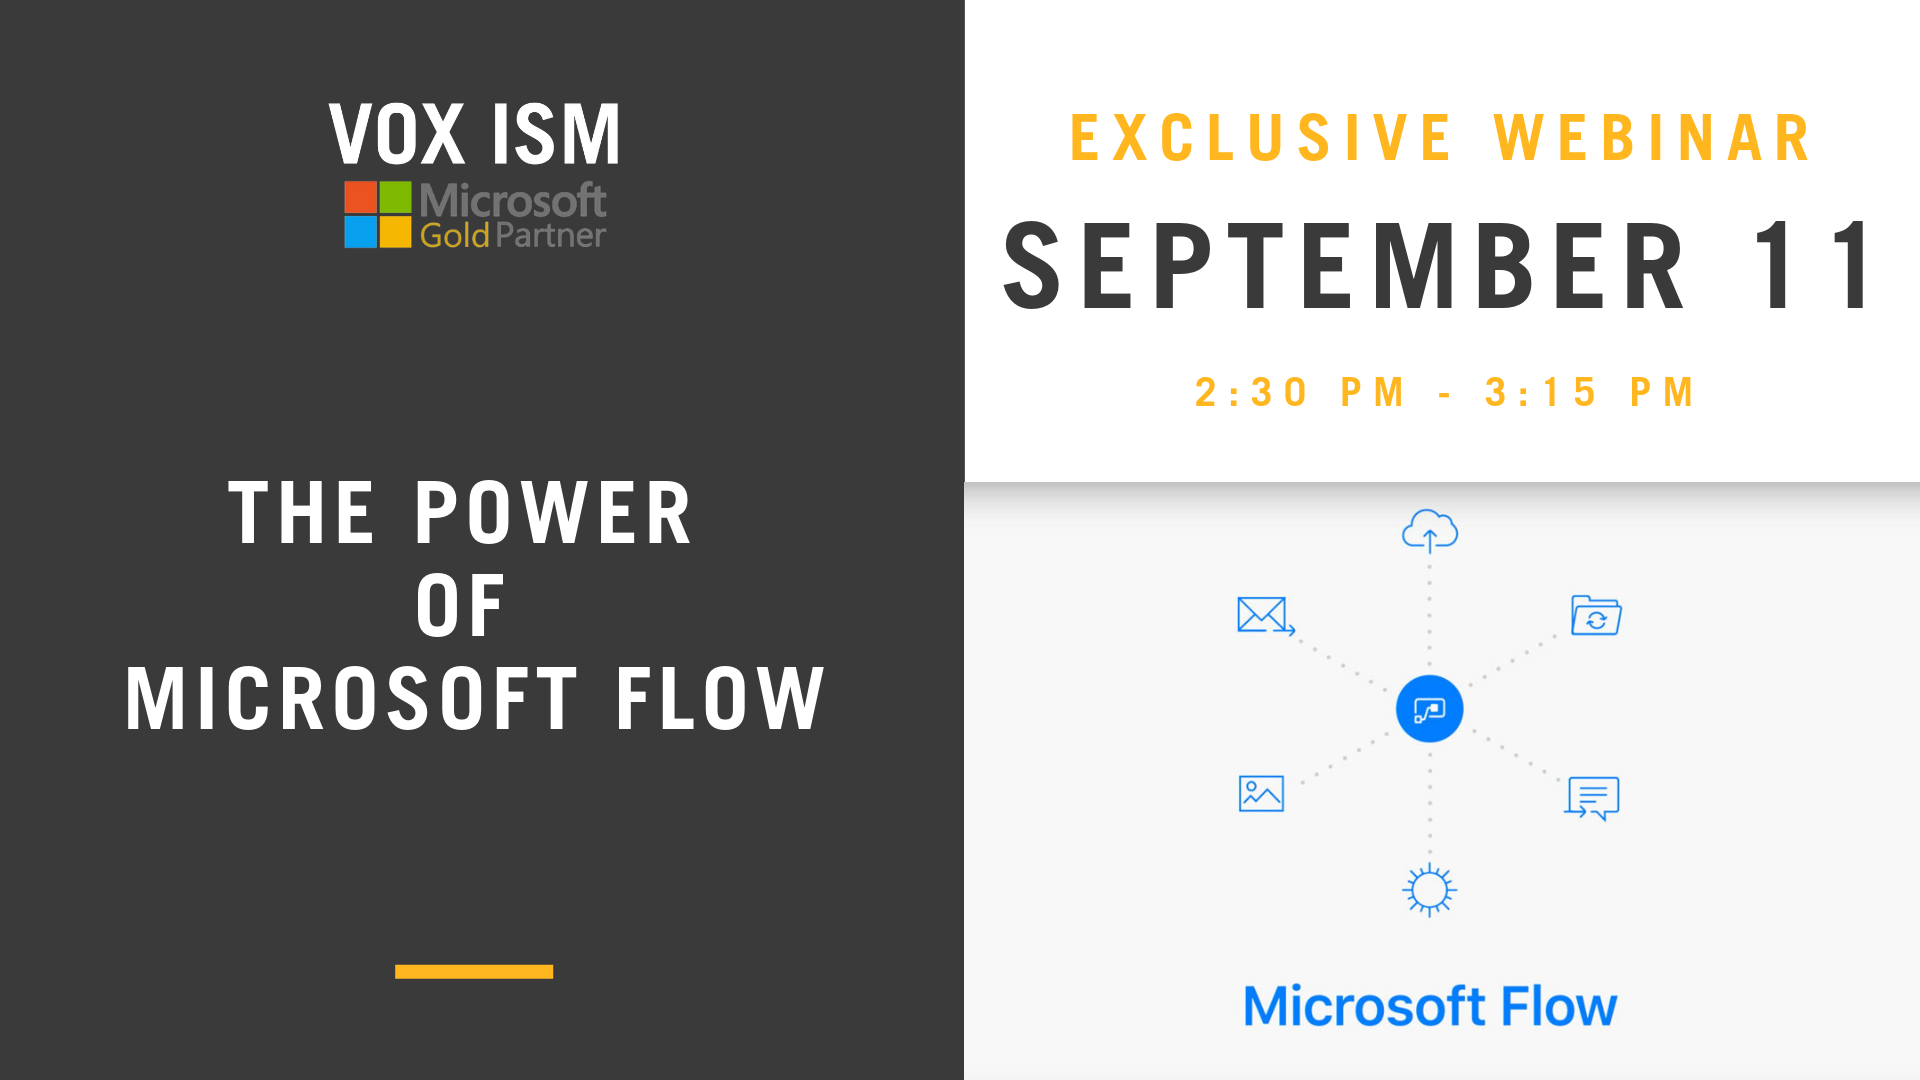 The Power of Microsoft Flow - September 11 - Webinar - VOX ISM